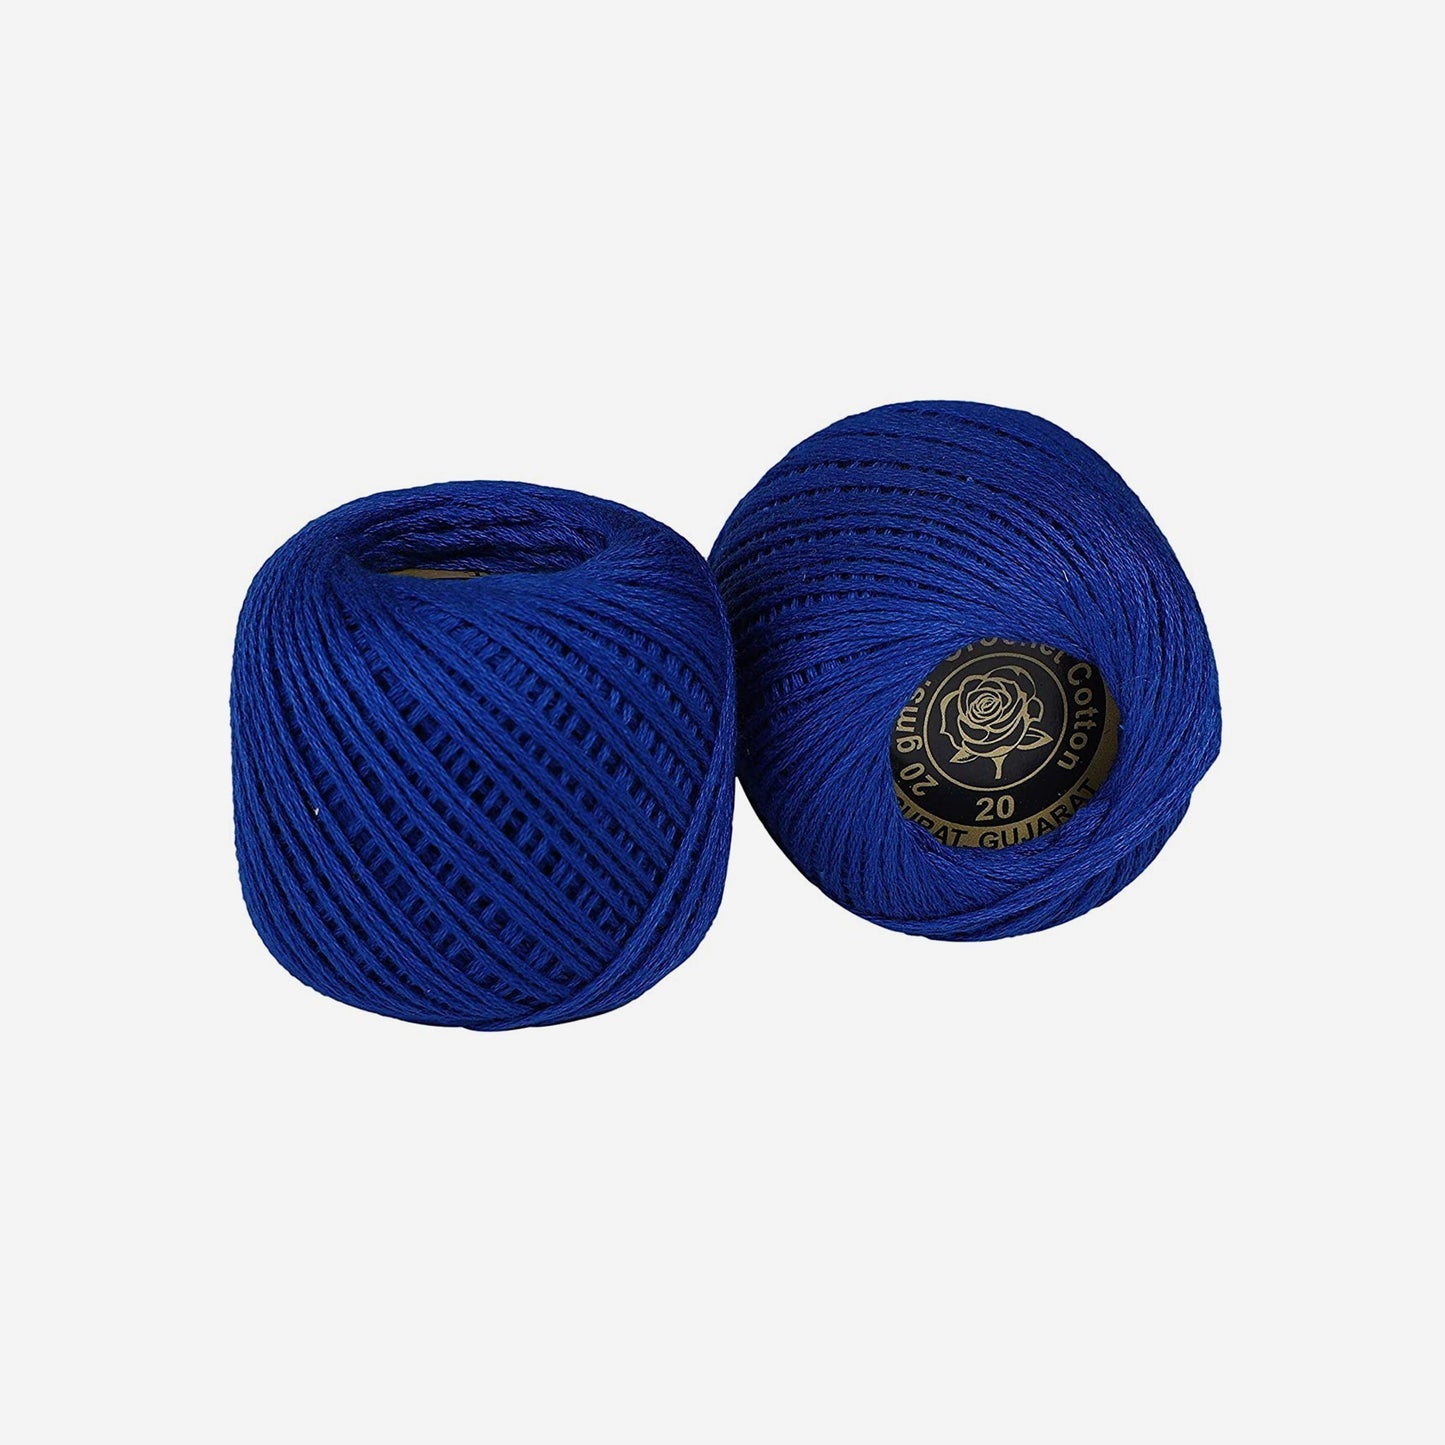 Hand-crochet hoops (Variation 6)